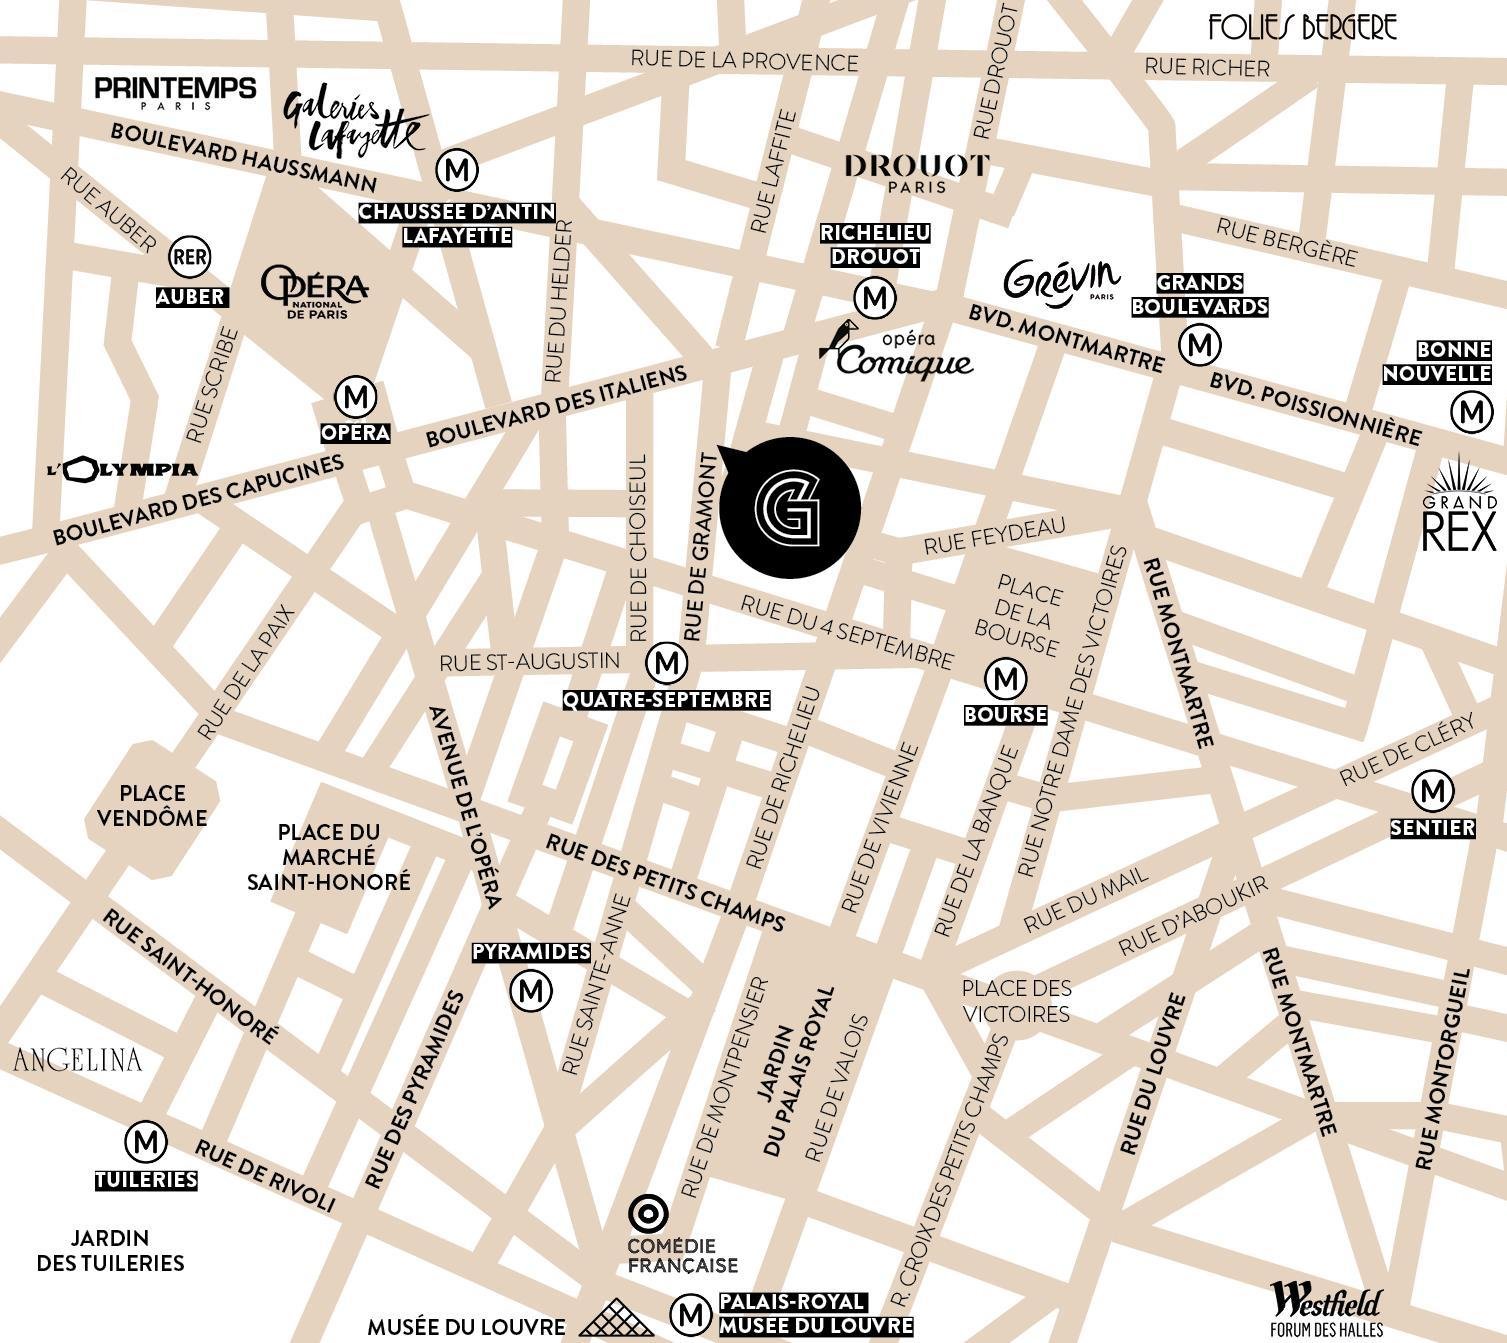 Plan du quartier de l'hôtel Gramont, situé proche de l'Opéra, ses transports, ses parkings.